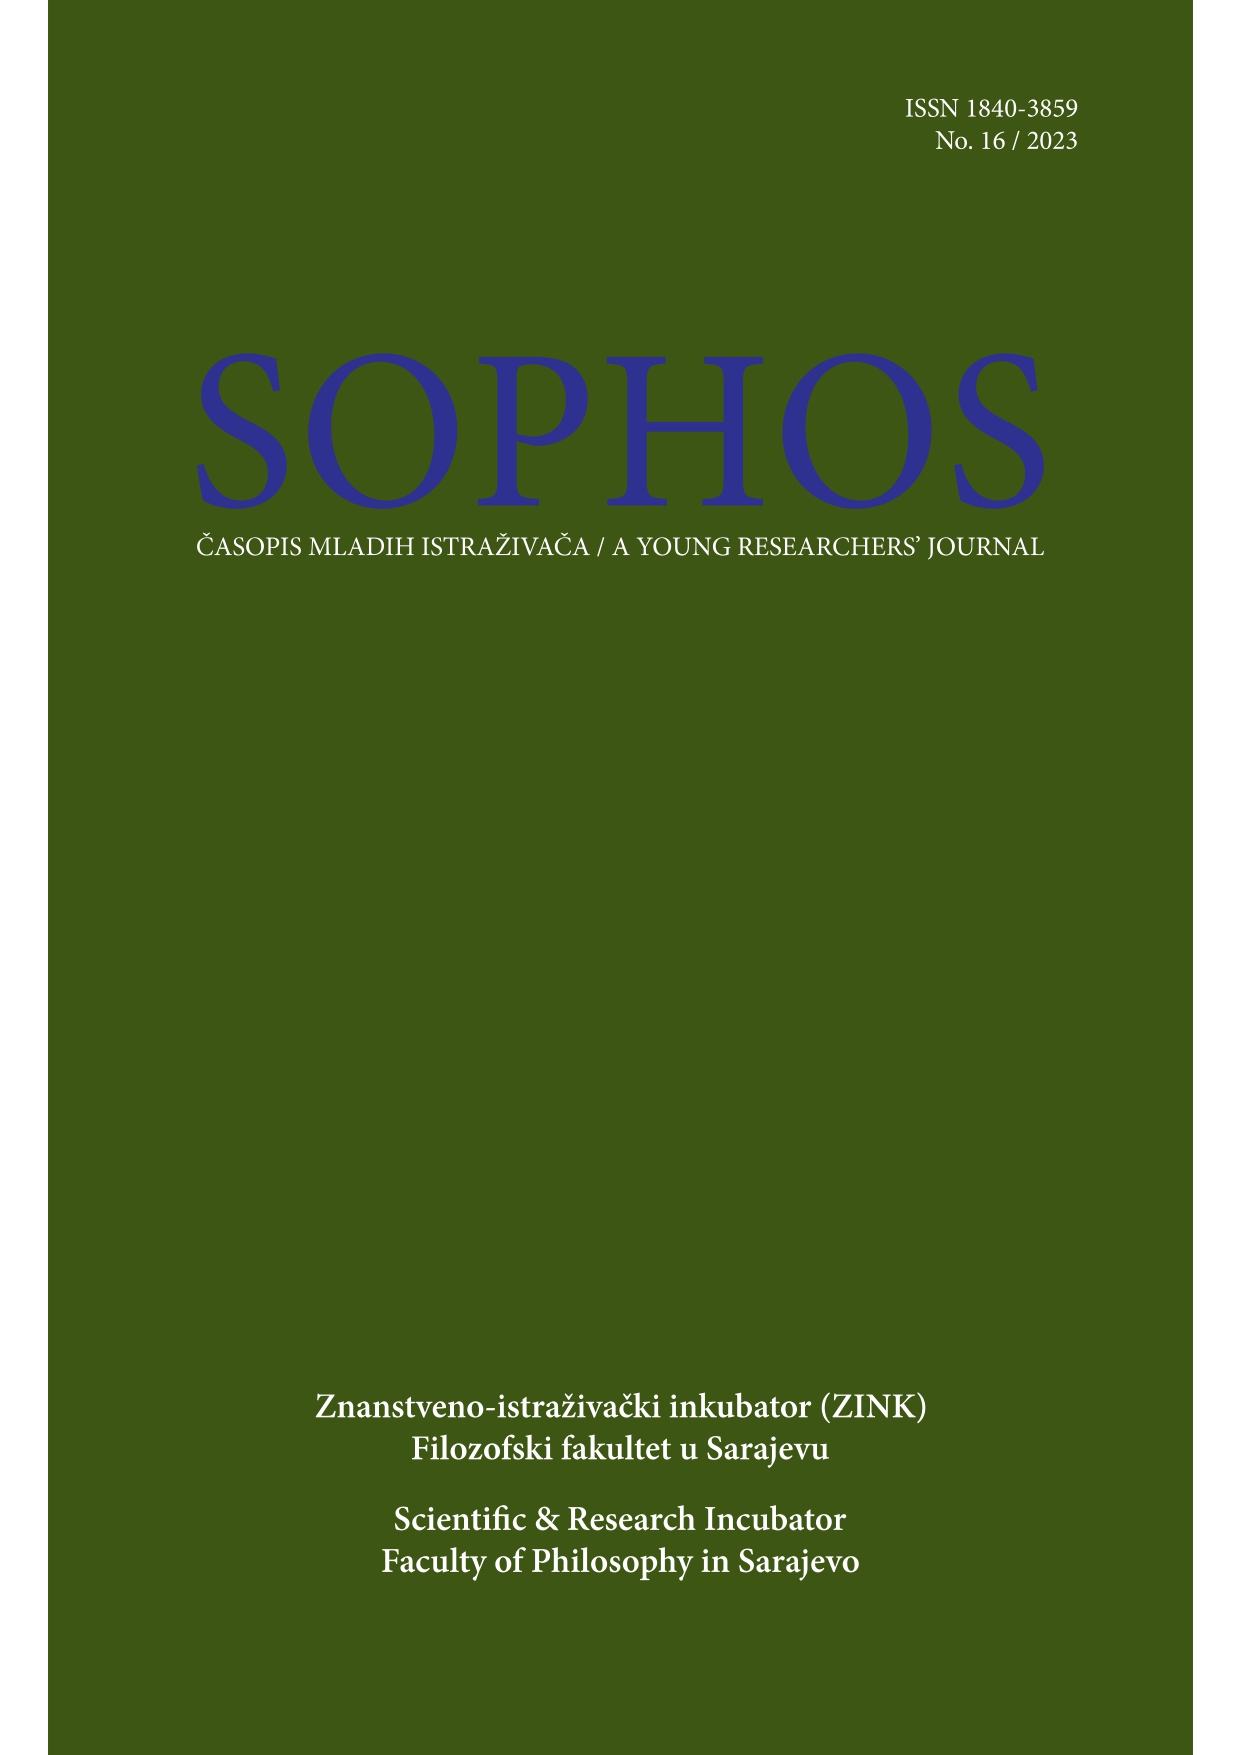 Ivo Komšić (2023): Fenomeni socijalne pulsacije Cover Image